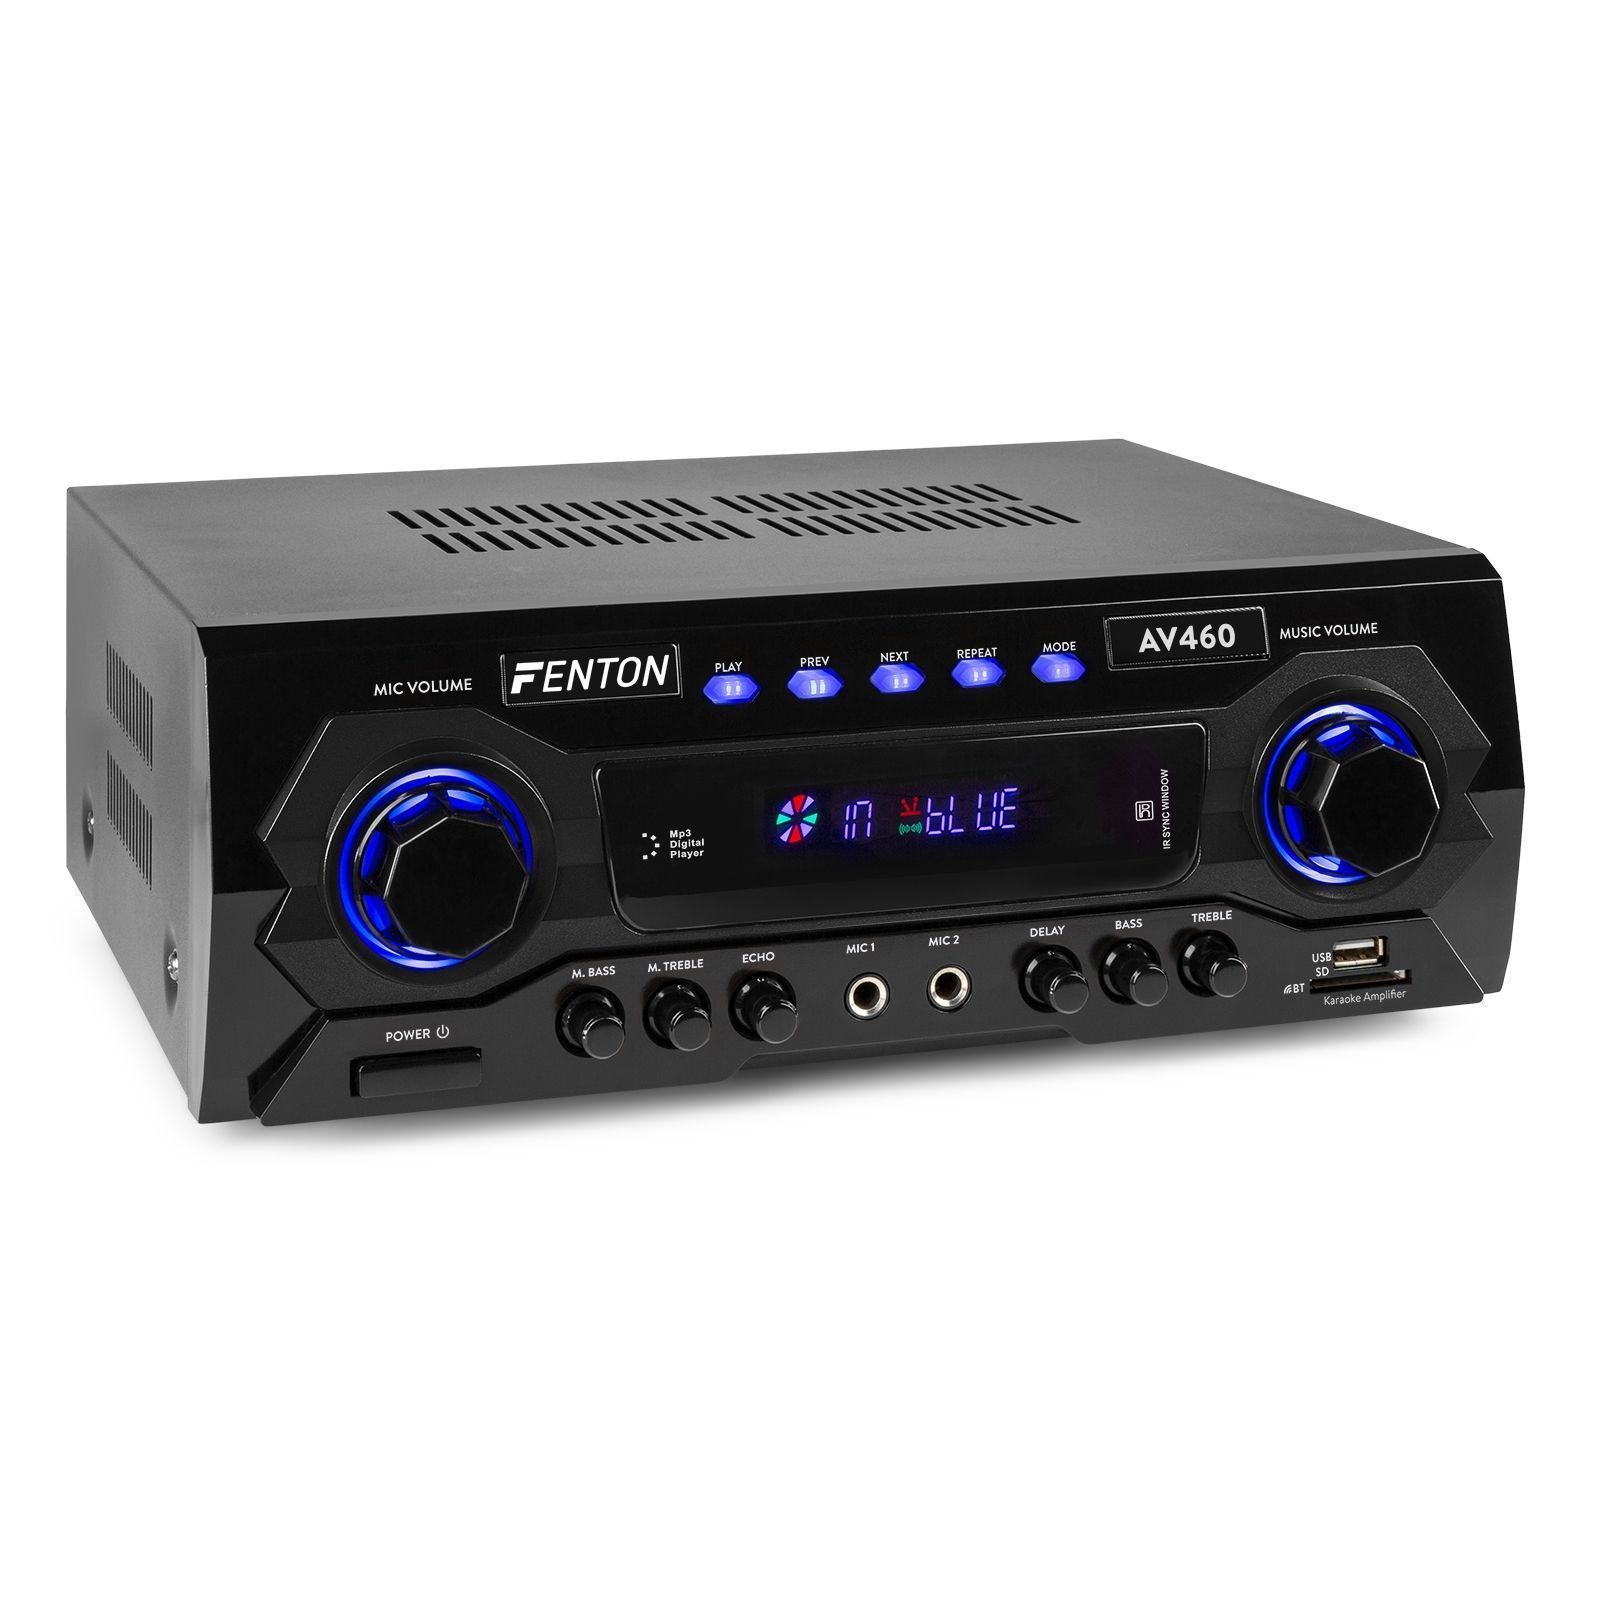 Toeschouwer burgemeester fax Fenton AV460 karaoke versterker met Bluetooth, mp3 speler, echo en  equalizer kopen?